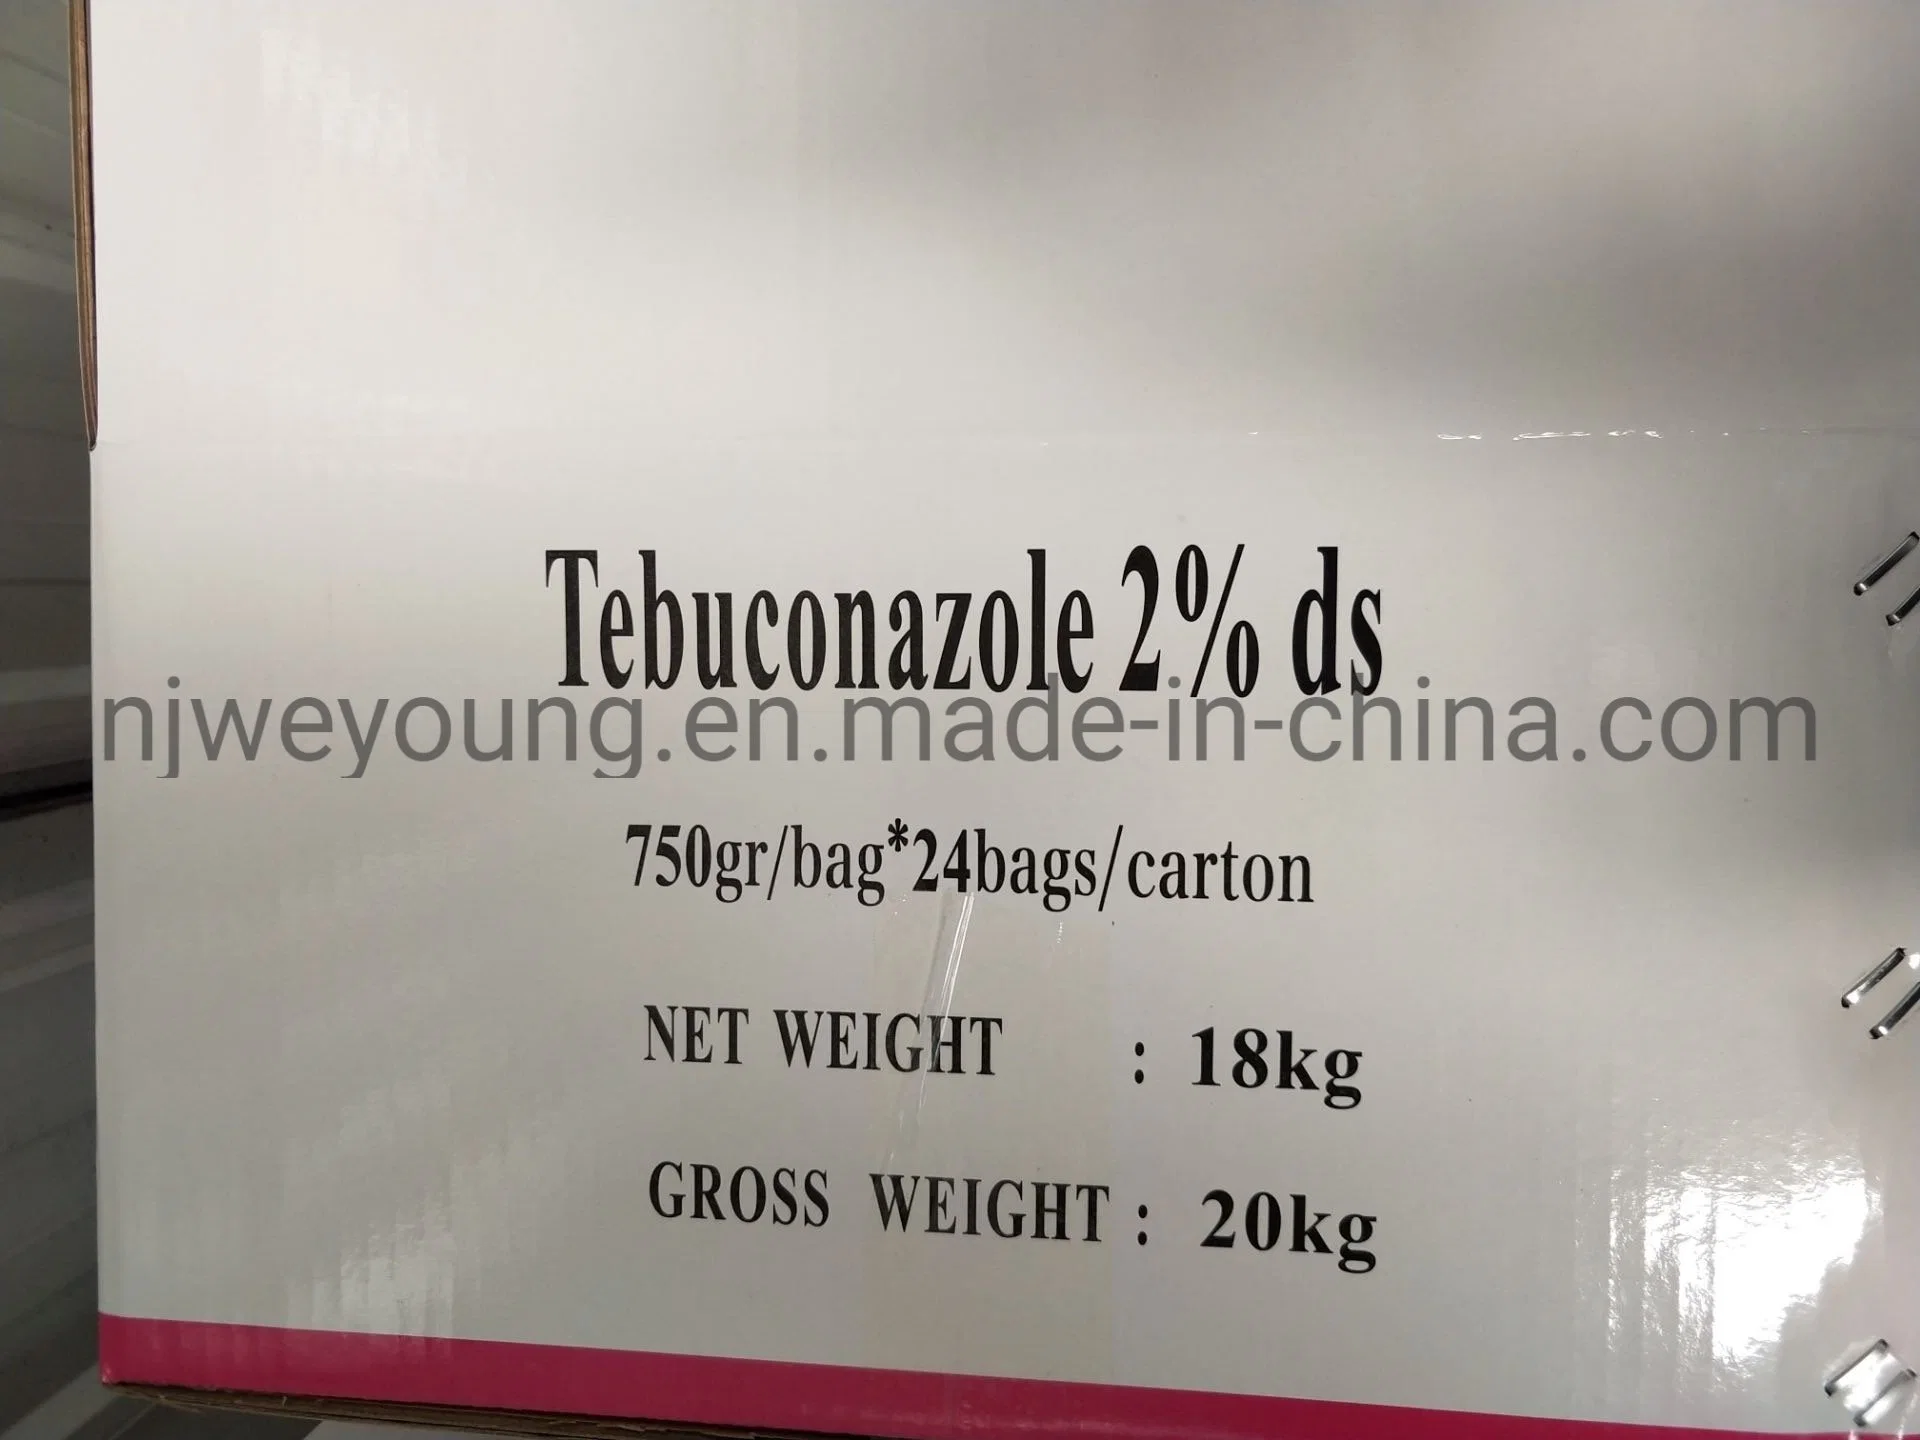 Fungicida altamente eficientes tebuconazol 2%Ds